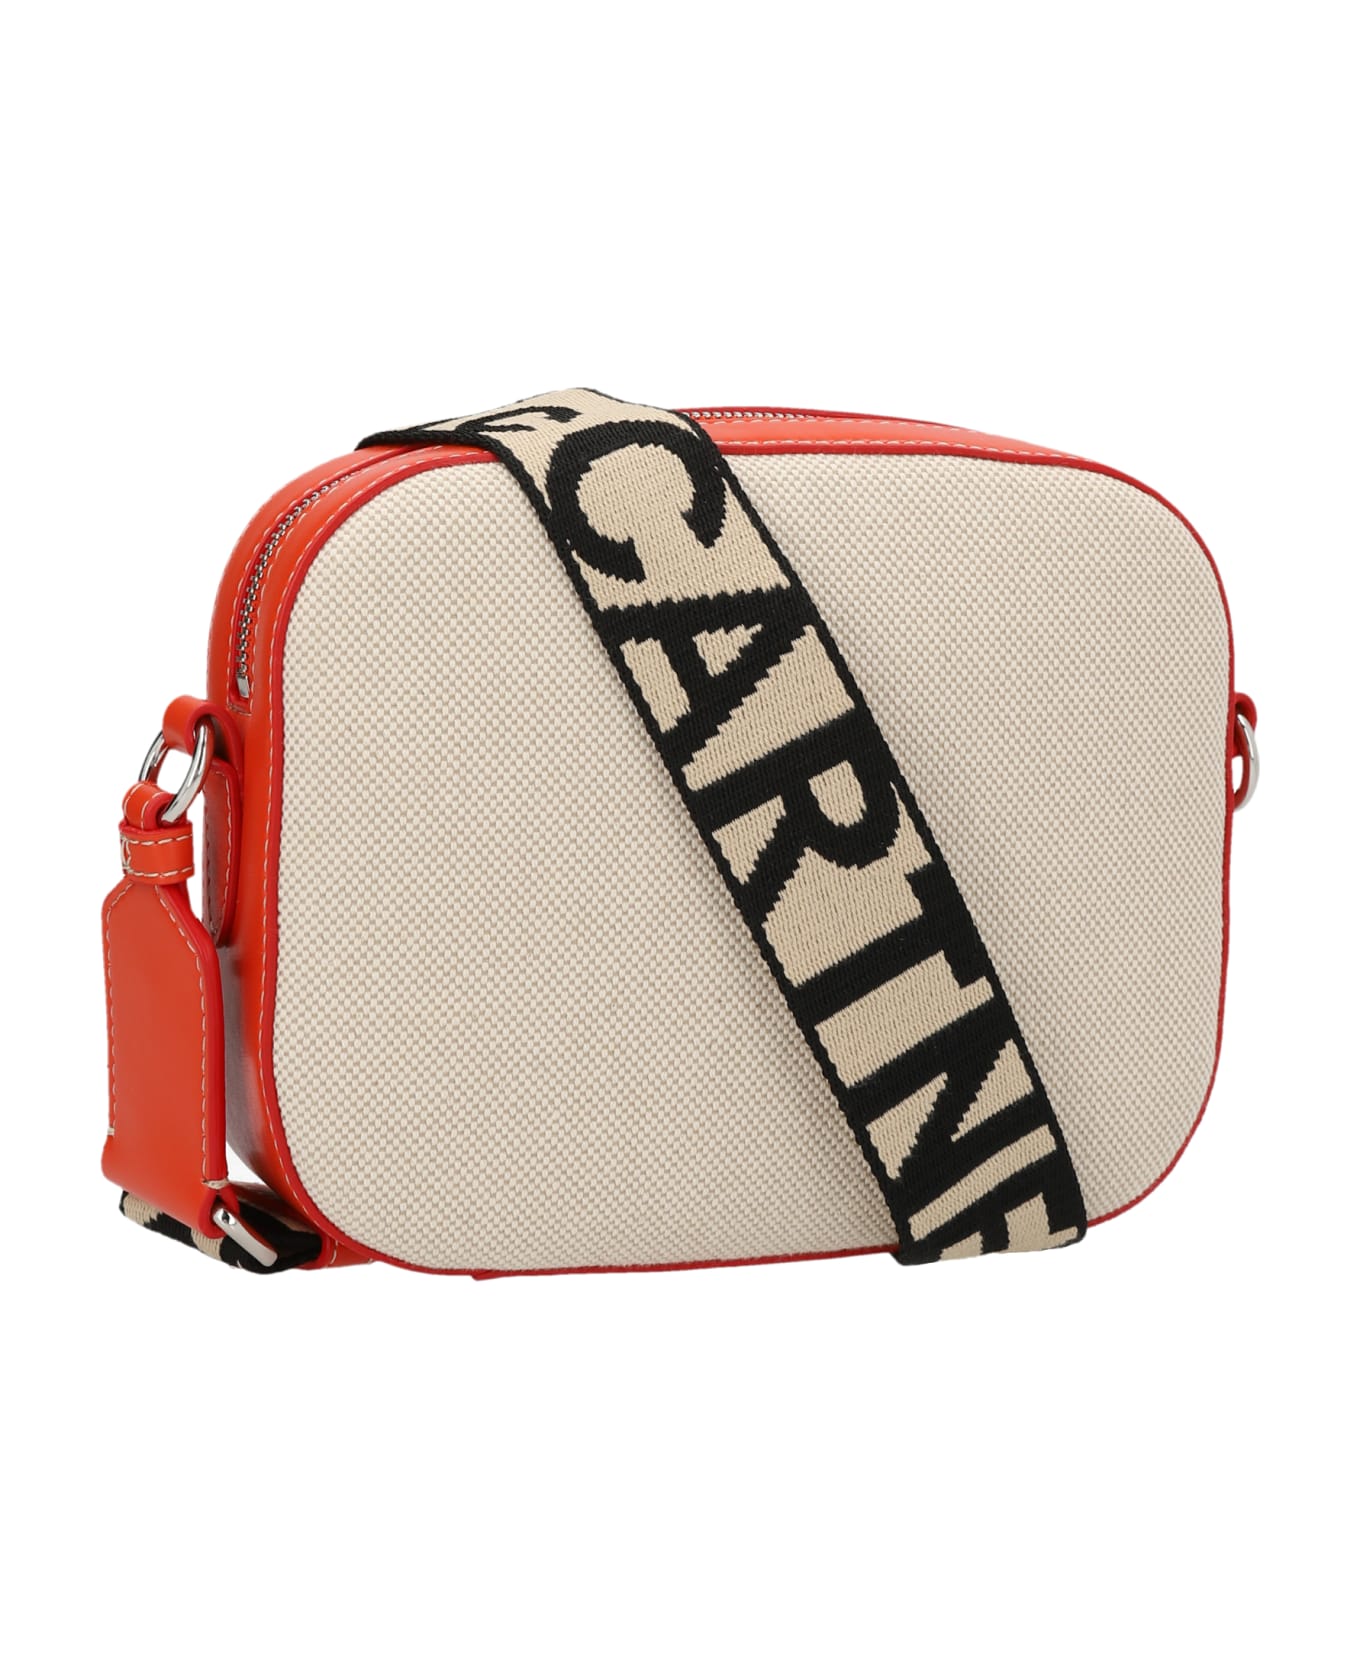 Stella McCartney Camera Shoulder Bag - Red